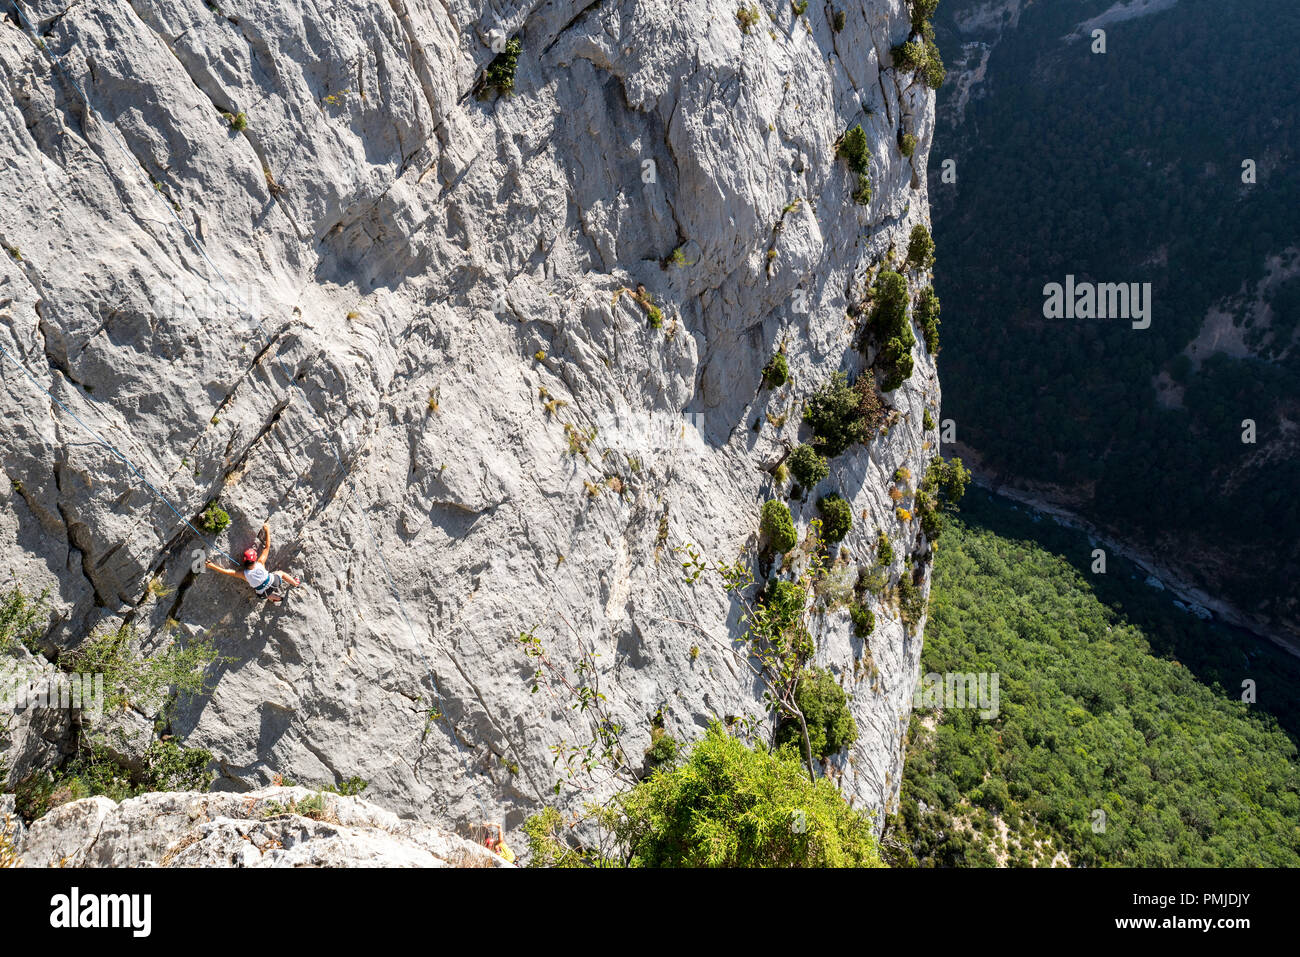 Rock climber climbing rock face in the Gorges du Verdon / Verdon Gorge canyon, Alpes-de-Haute-Provence, Provence-Alpes-Côte d'Azur, France Stock Photo